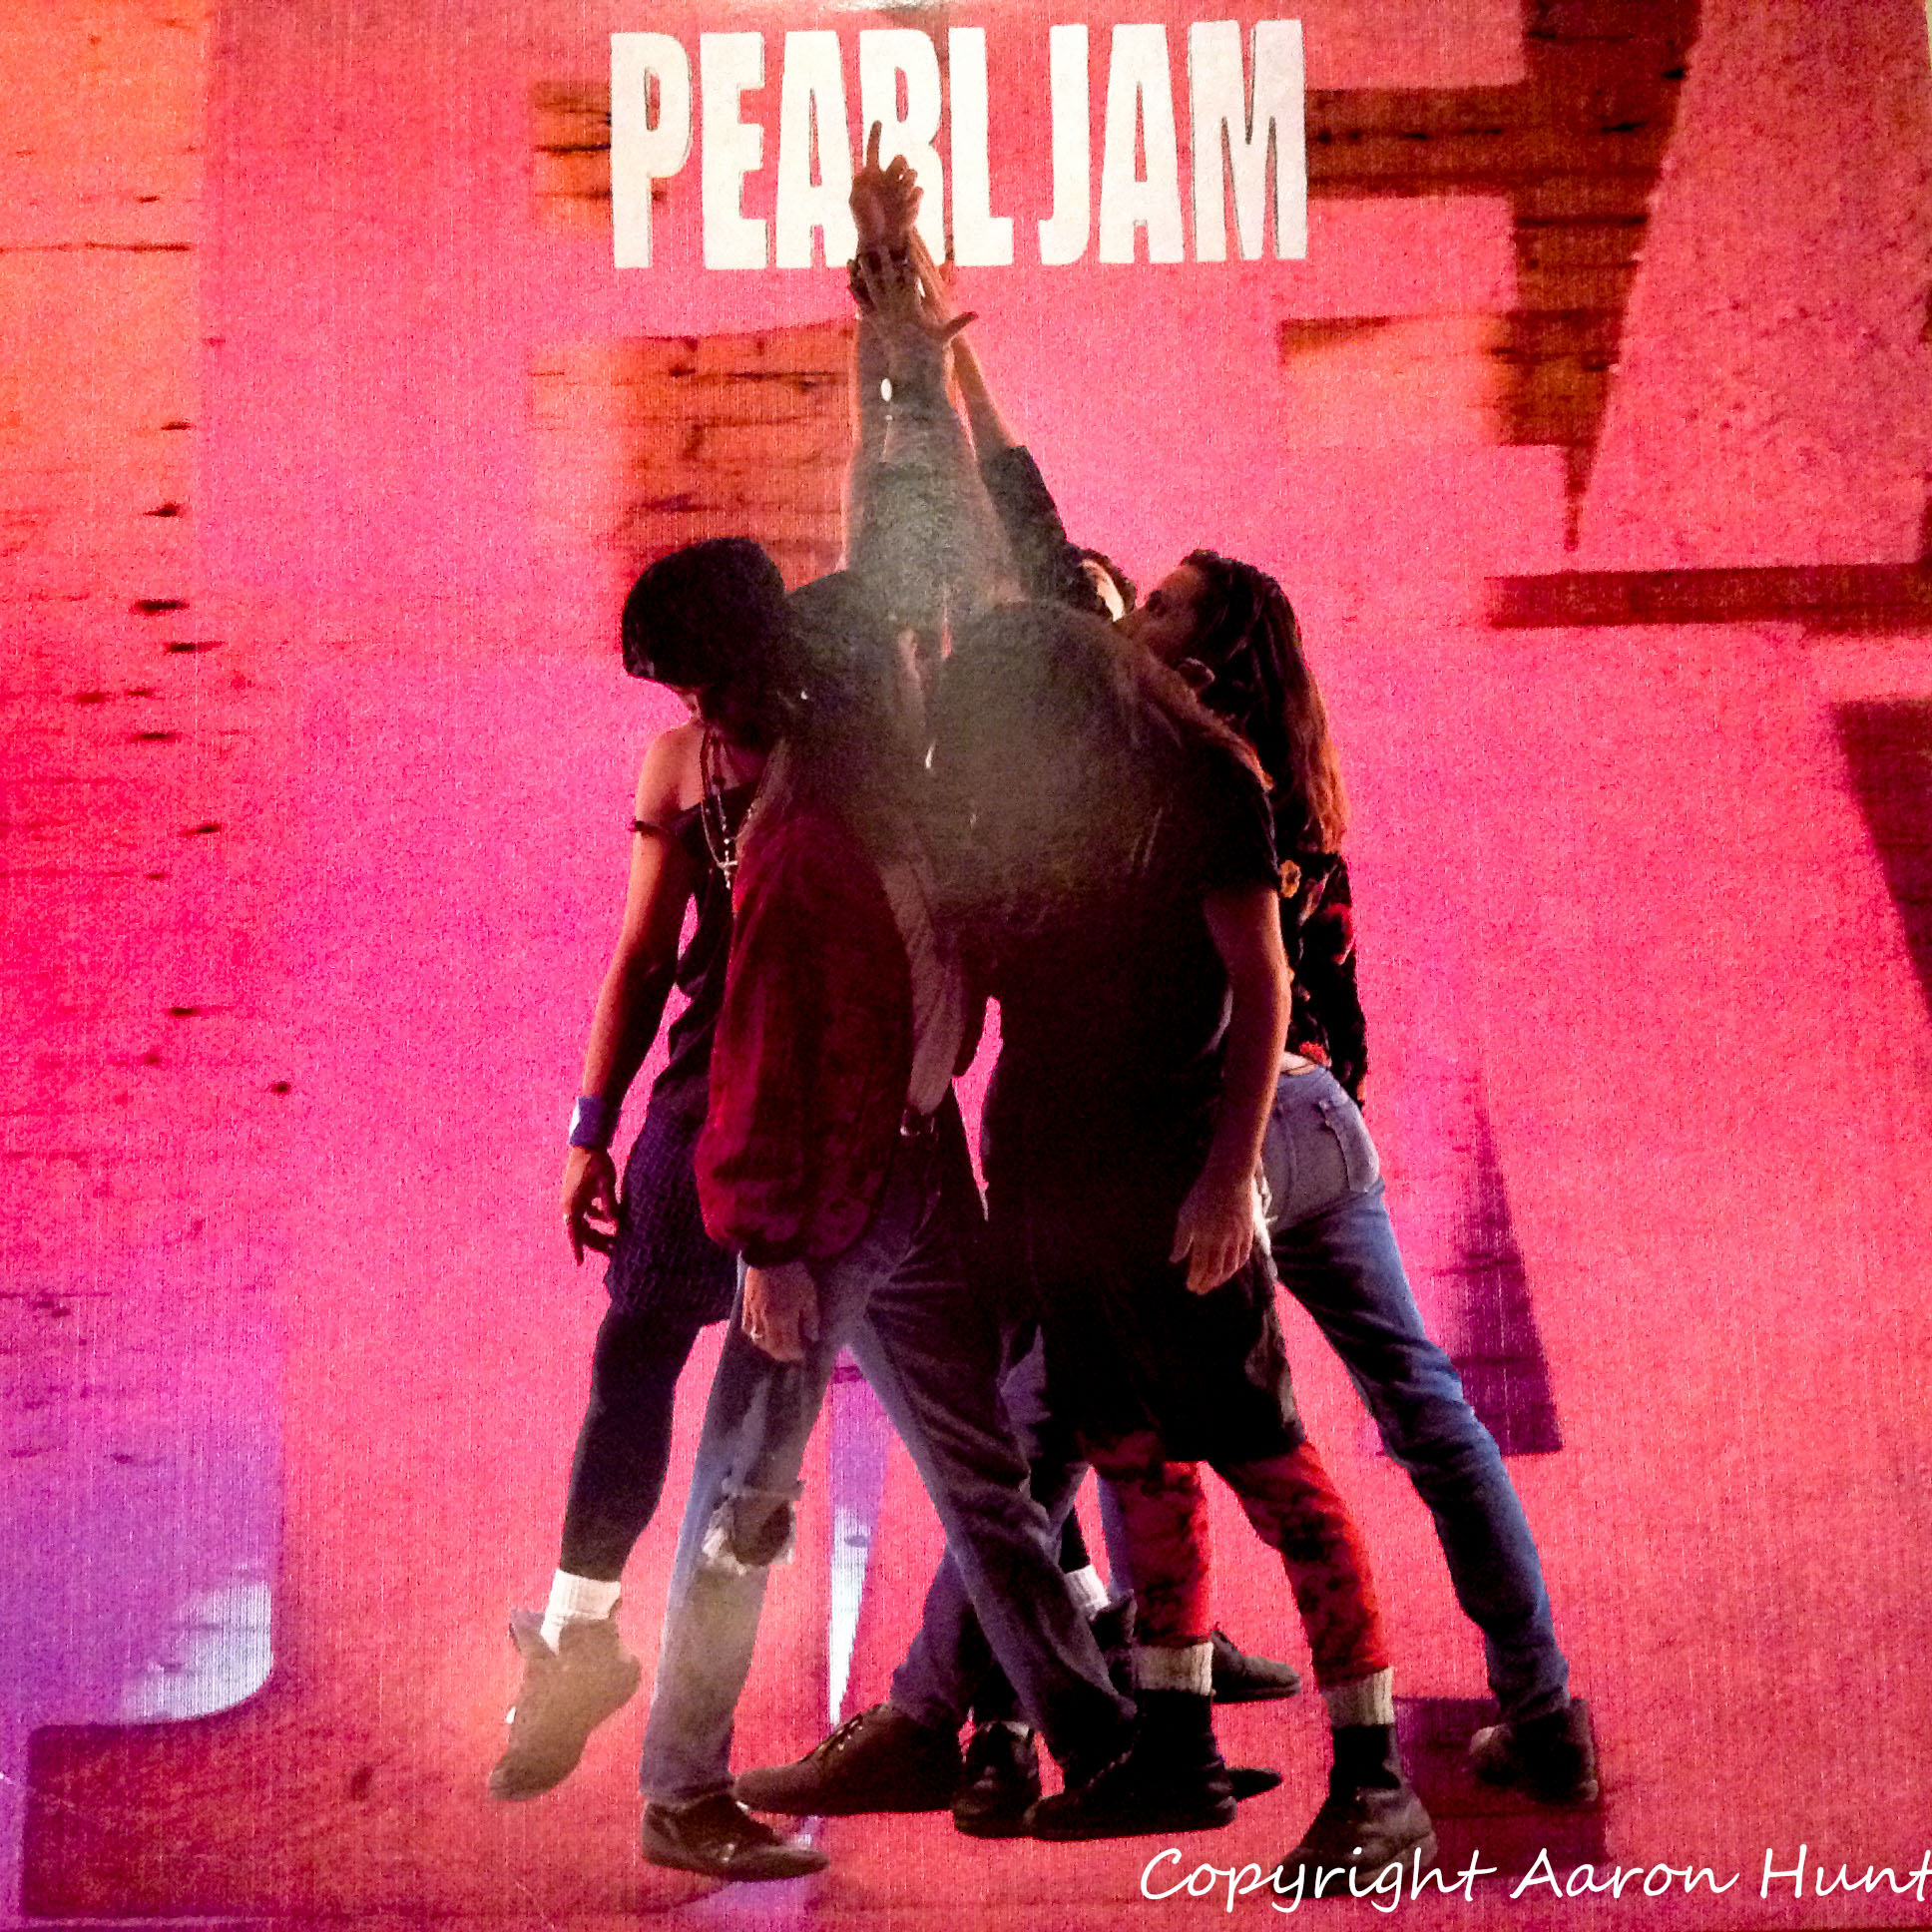 Pearl Jam, ‘Ten‘ (1991) - 13 millió<br /><br />Minden idők egyik legerősebb debütlemeze csak az első öt évében elérte már a gyémántlemez státuszt, azaz a tízmilliós eladást, ami valljuk be minden, csak épp nem rossz teljesítmény. Nyilván meg is dolgoztak érte a srácok, sorban állnak itt a veretes grunge témák.